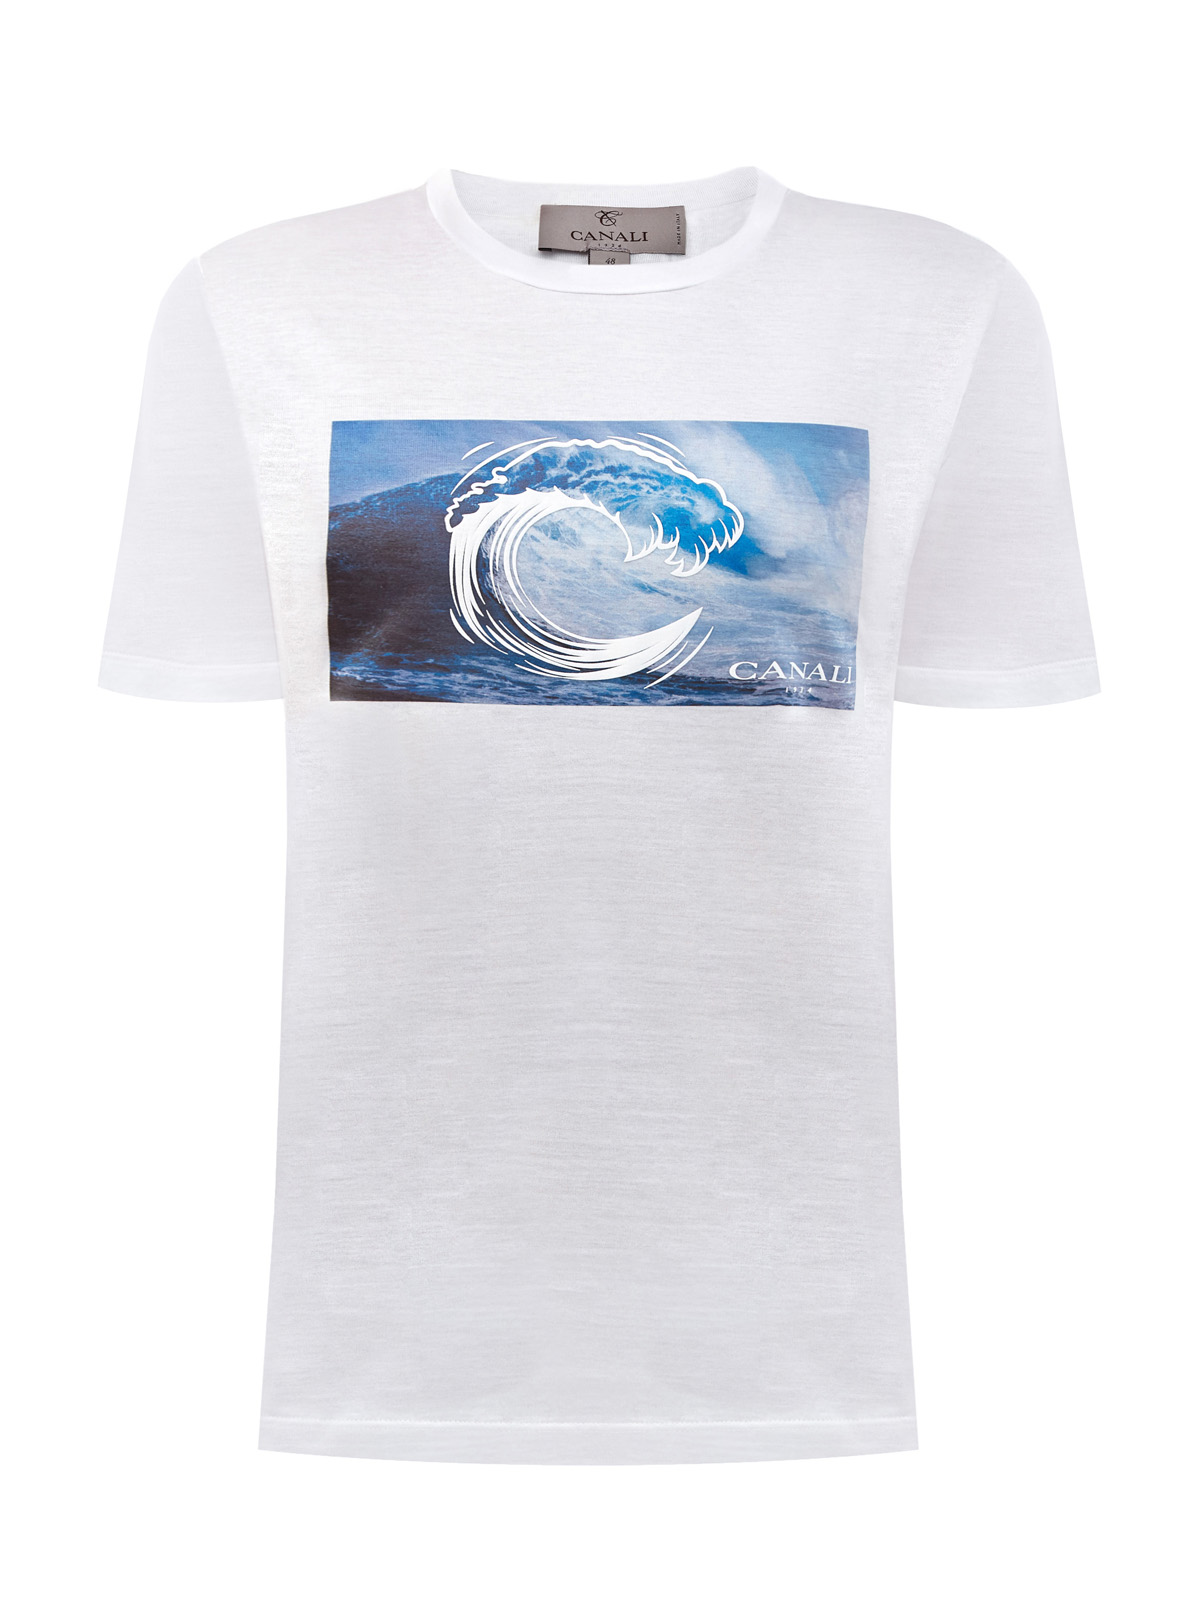 Легкая футболка из хлопка с динамичным принтом CANALI, цвет белый, размер 50;52;54;56;58;48 - фото 1